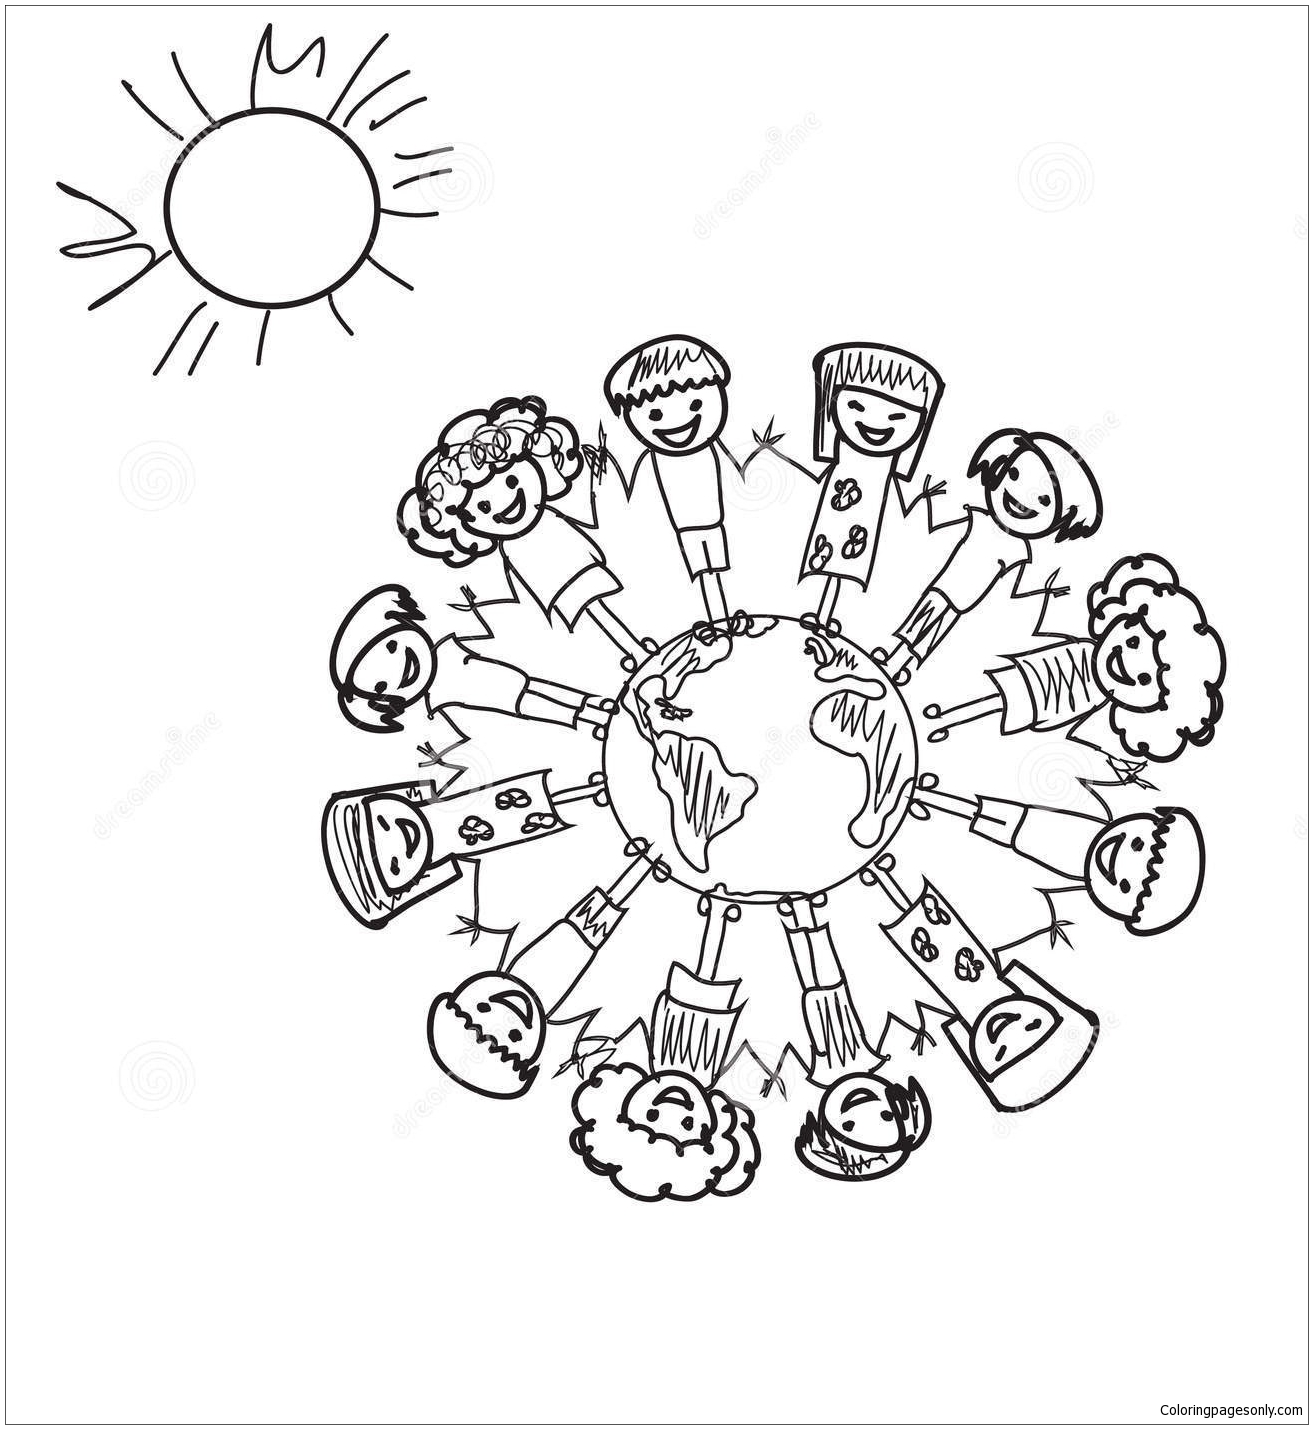 رسومات الشعار المبتكرة لأطفال الأرض من شوبكينز